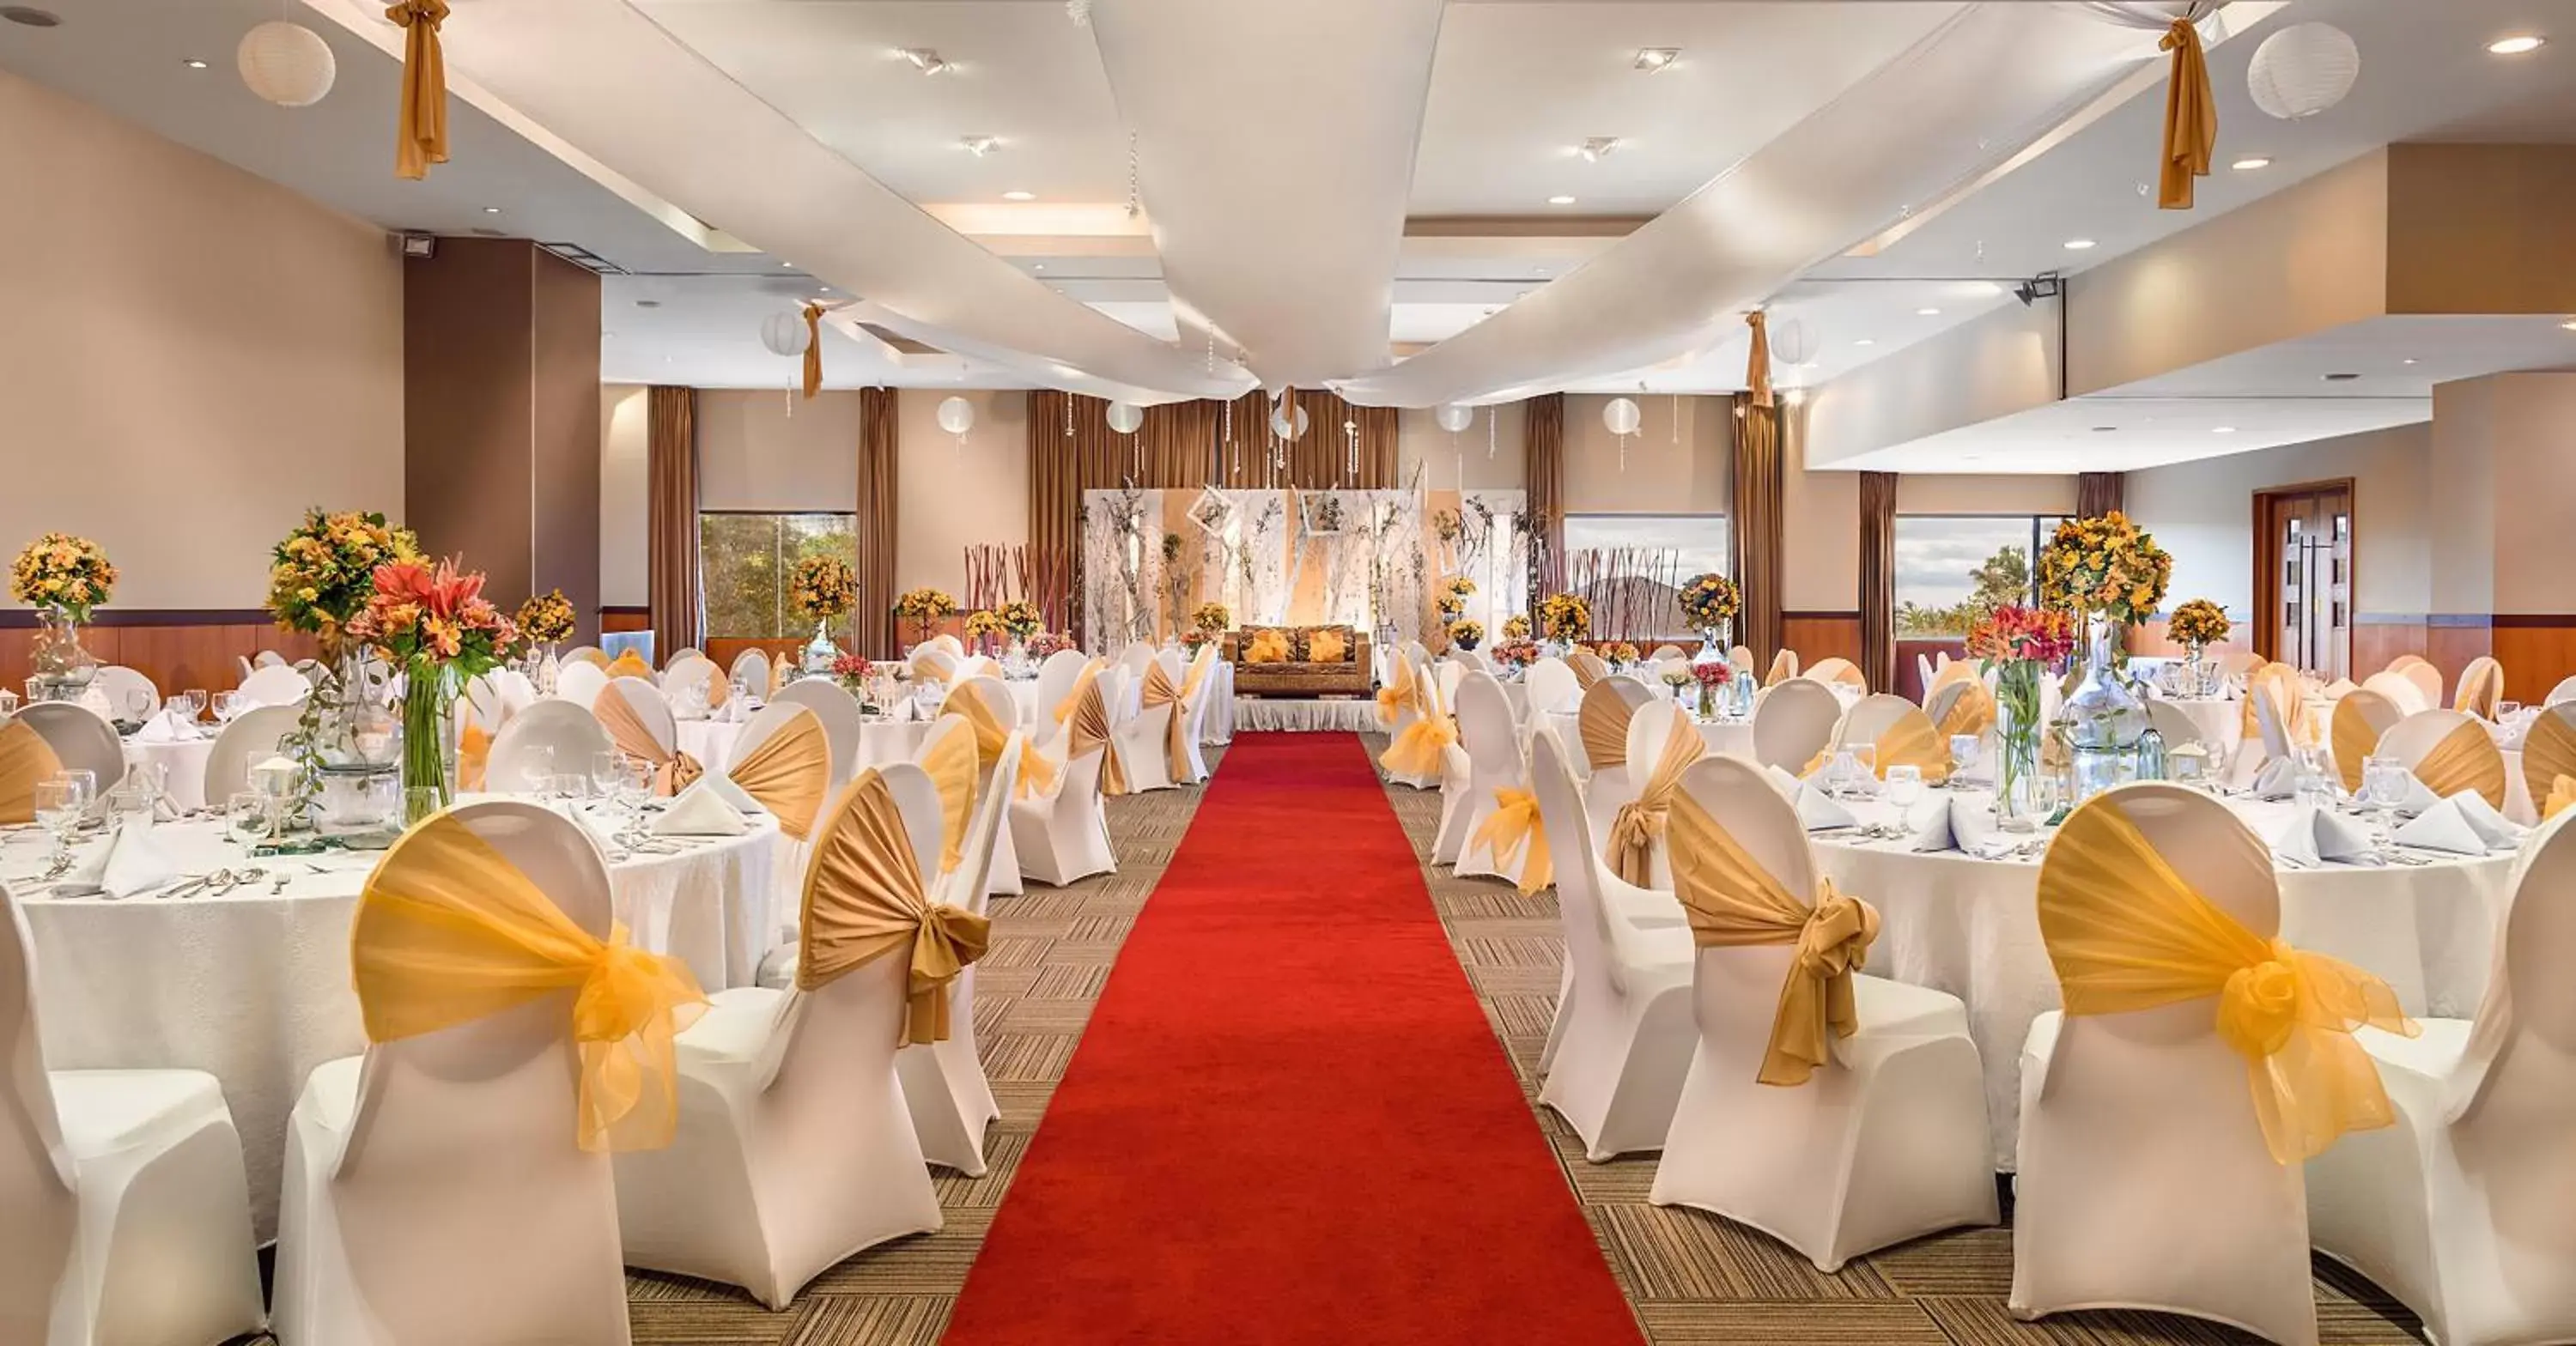 Banquet/Function facilities, Banquet Facilities in Hotel Kimberly Tagaytay